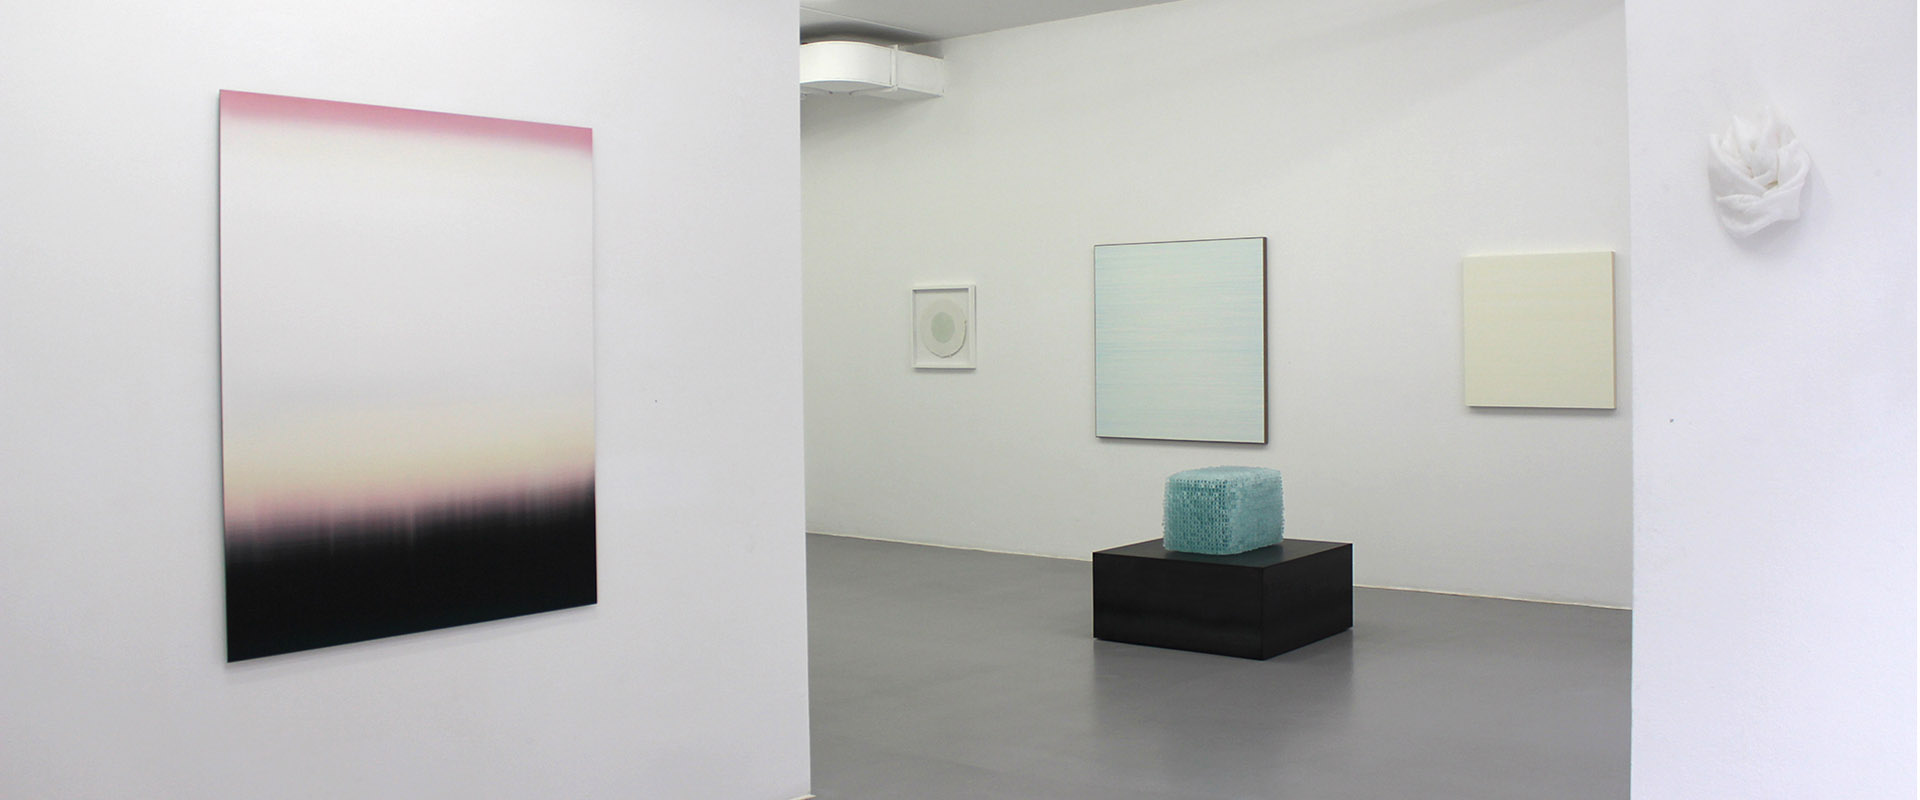 Ausstellungsansicht "wie weiss ist wissen die weisen", Galerie Renate Bender 2019